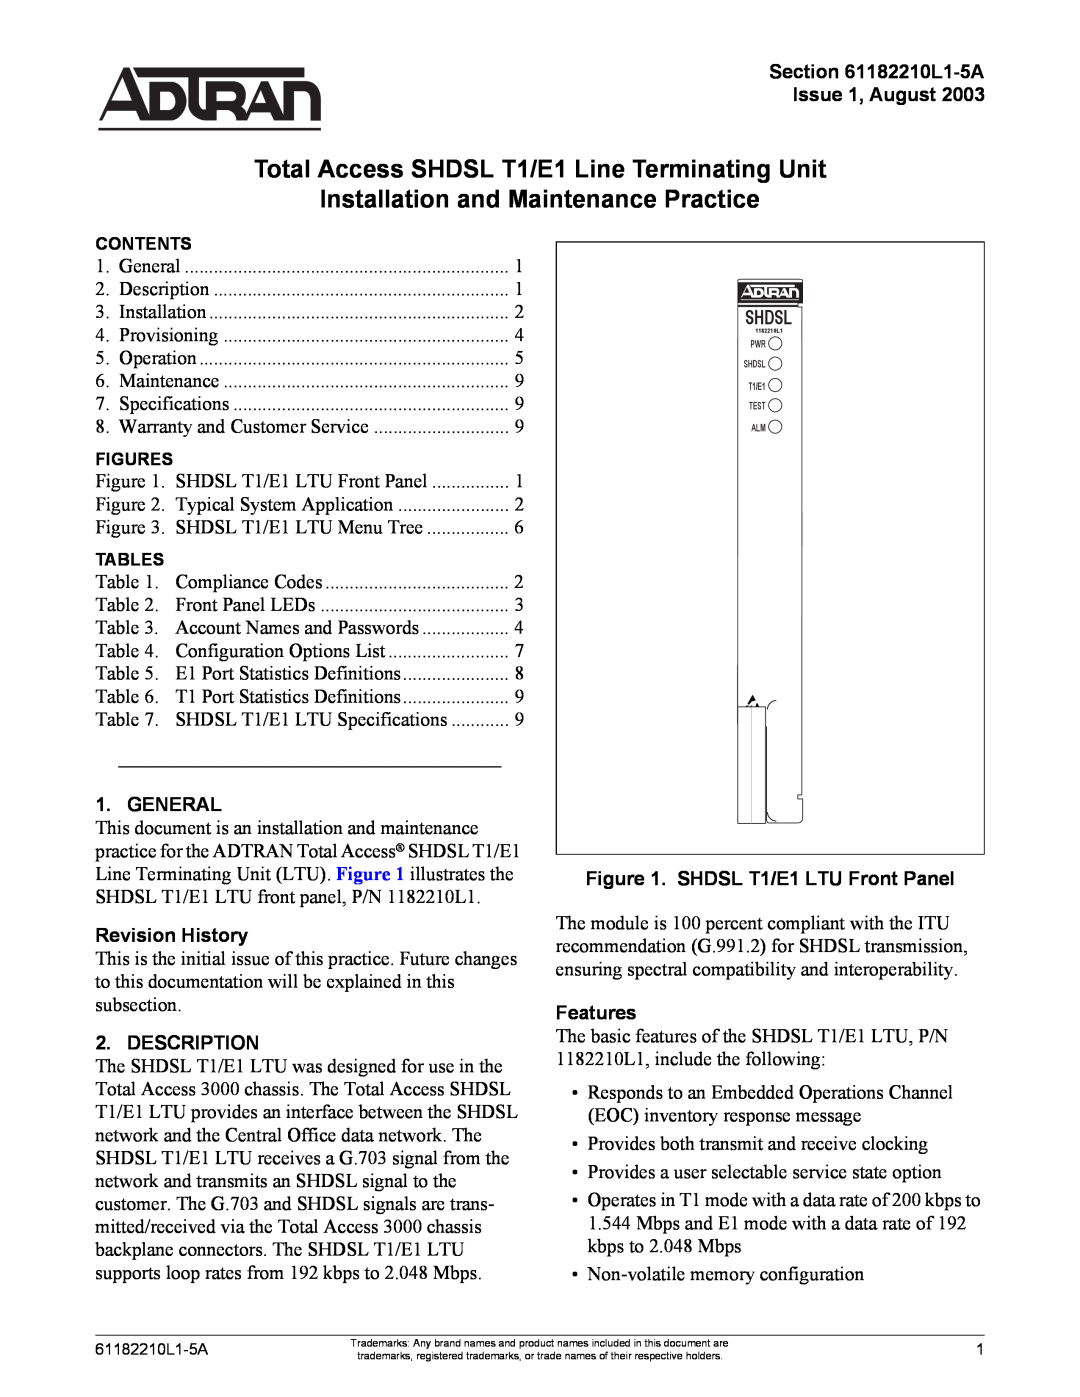 ADTRAN SHDSL T1 specifications L1-5A Issue 1, August, General, Revision History, Description, Shdsl, Features 